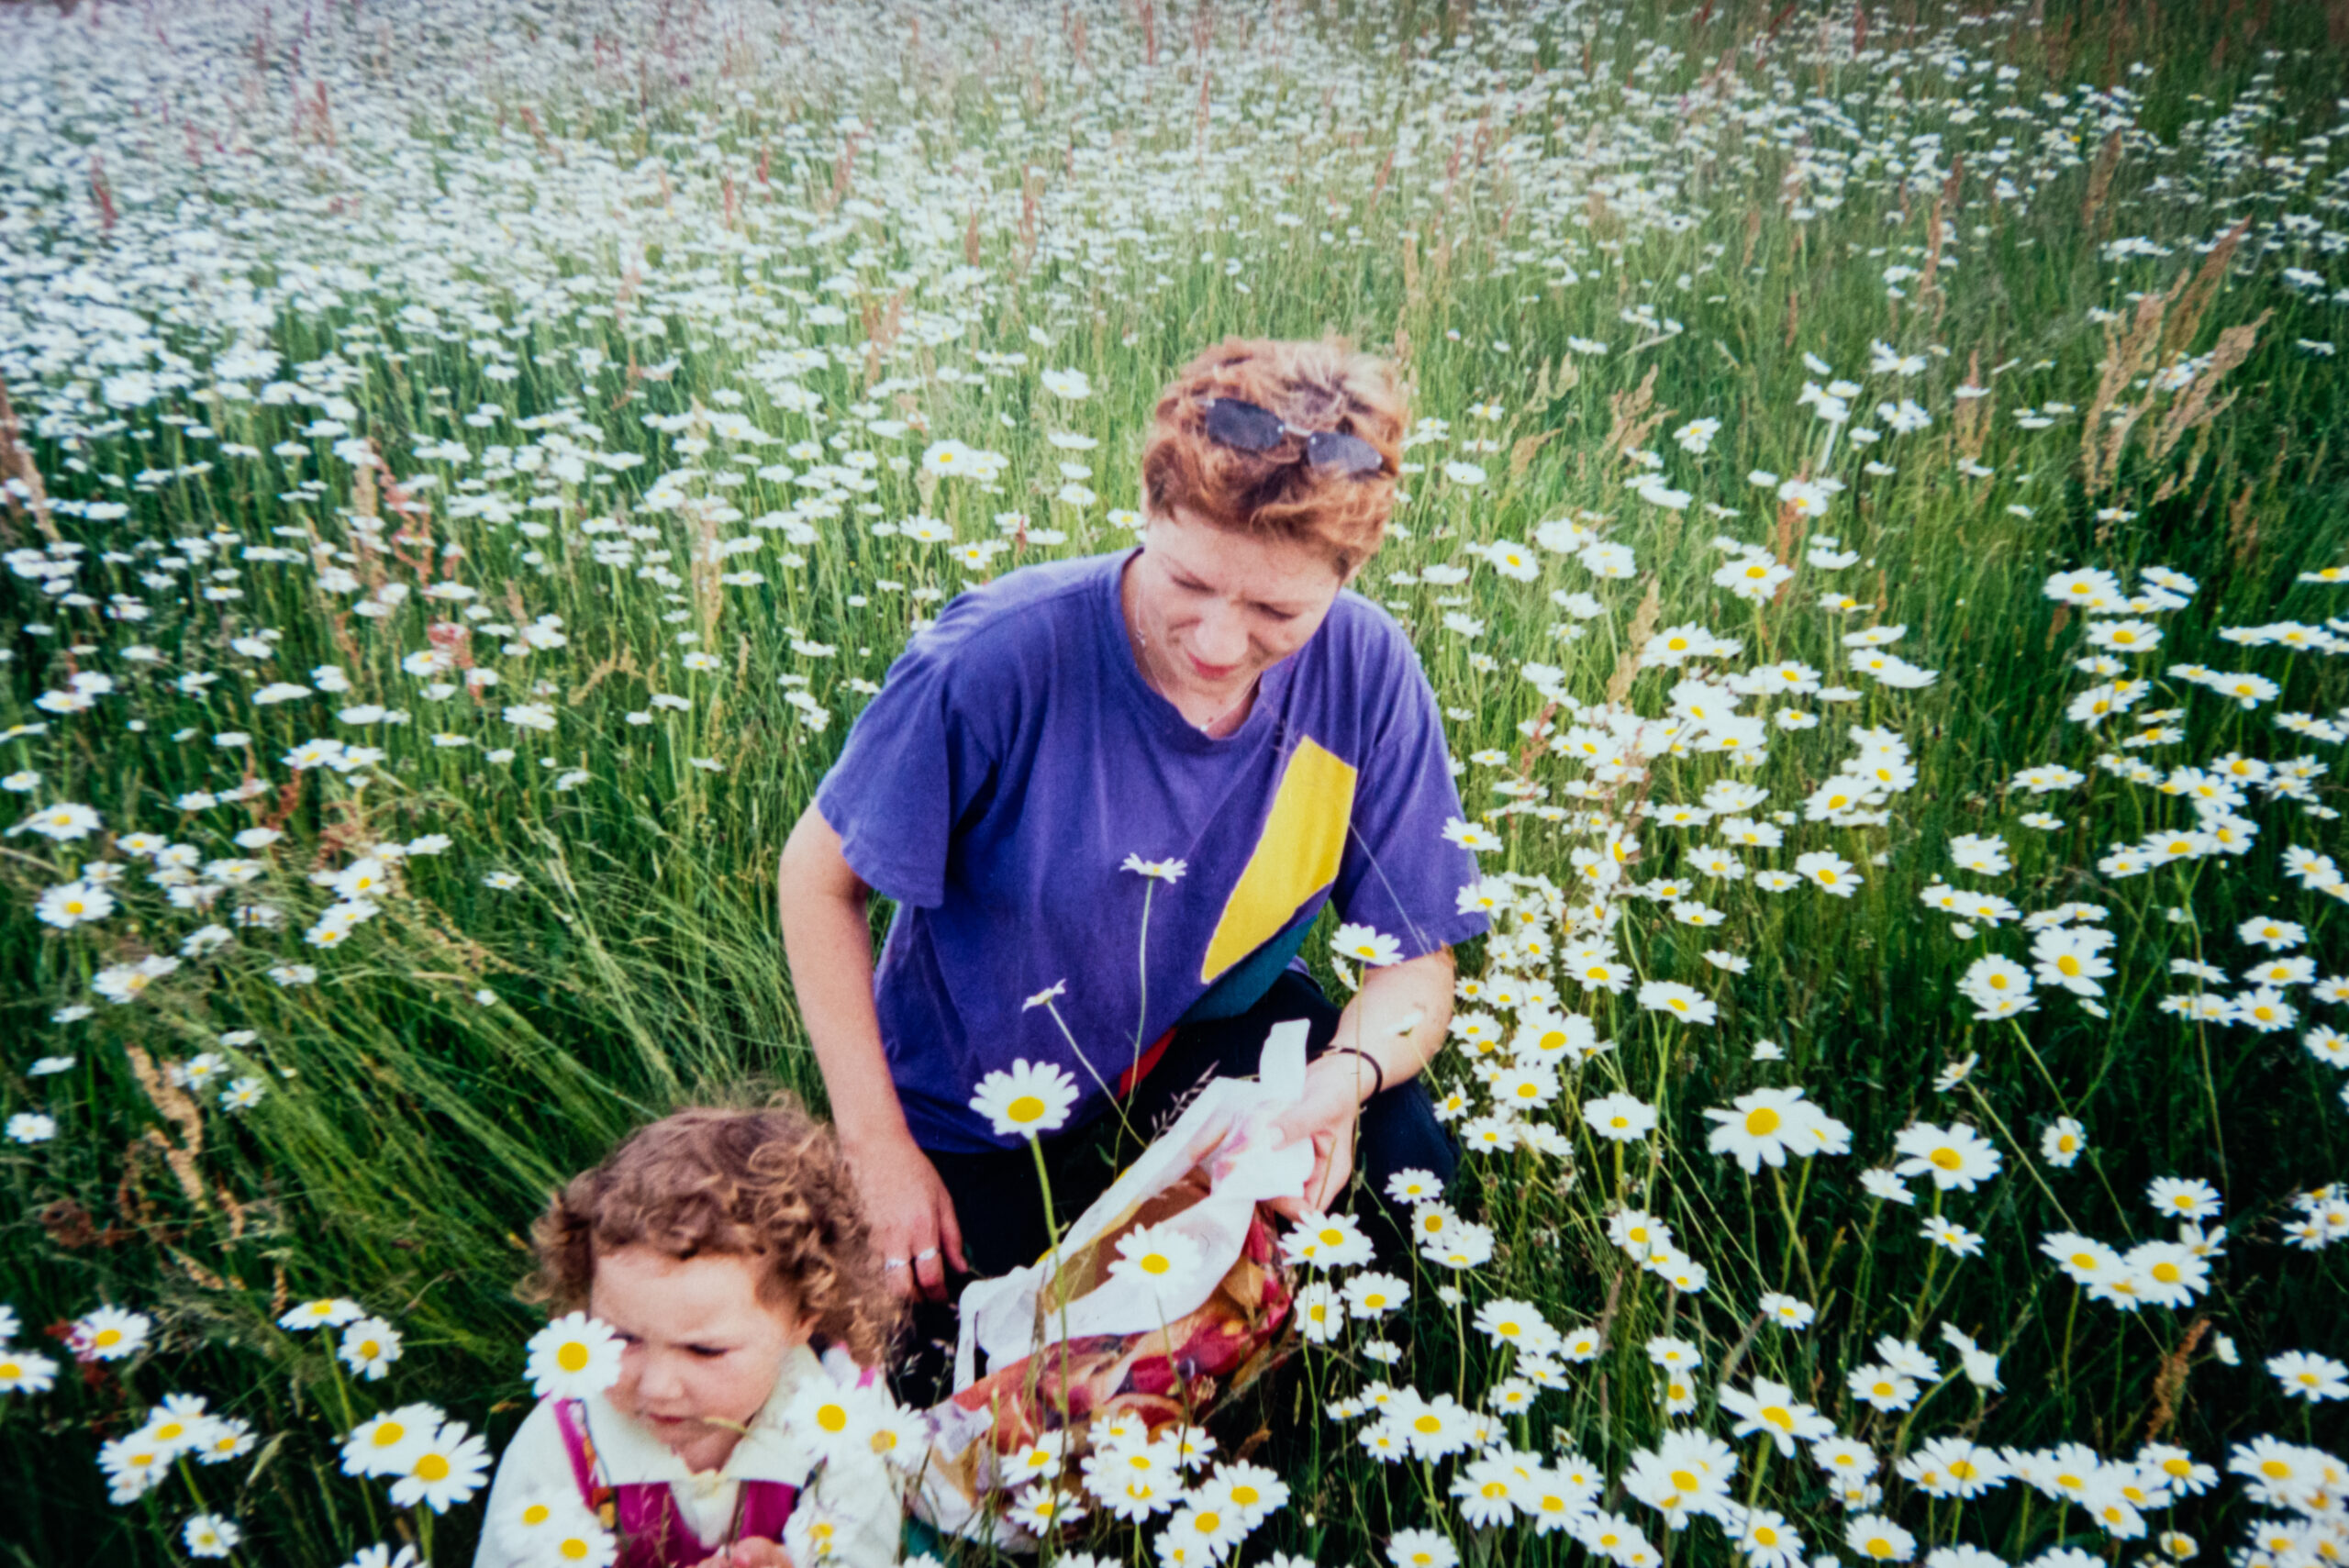 Kobieta oraz dziewczynka, zbierają białe polne kwiaty na łące.